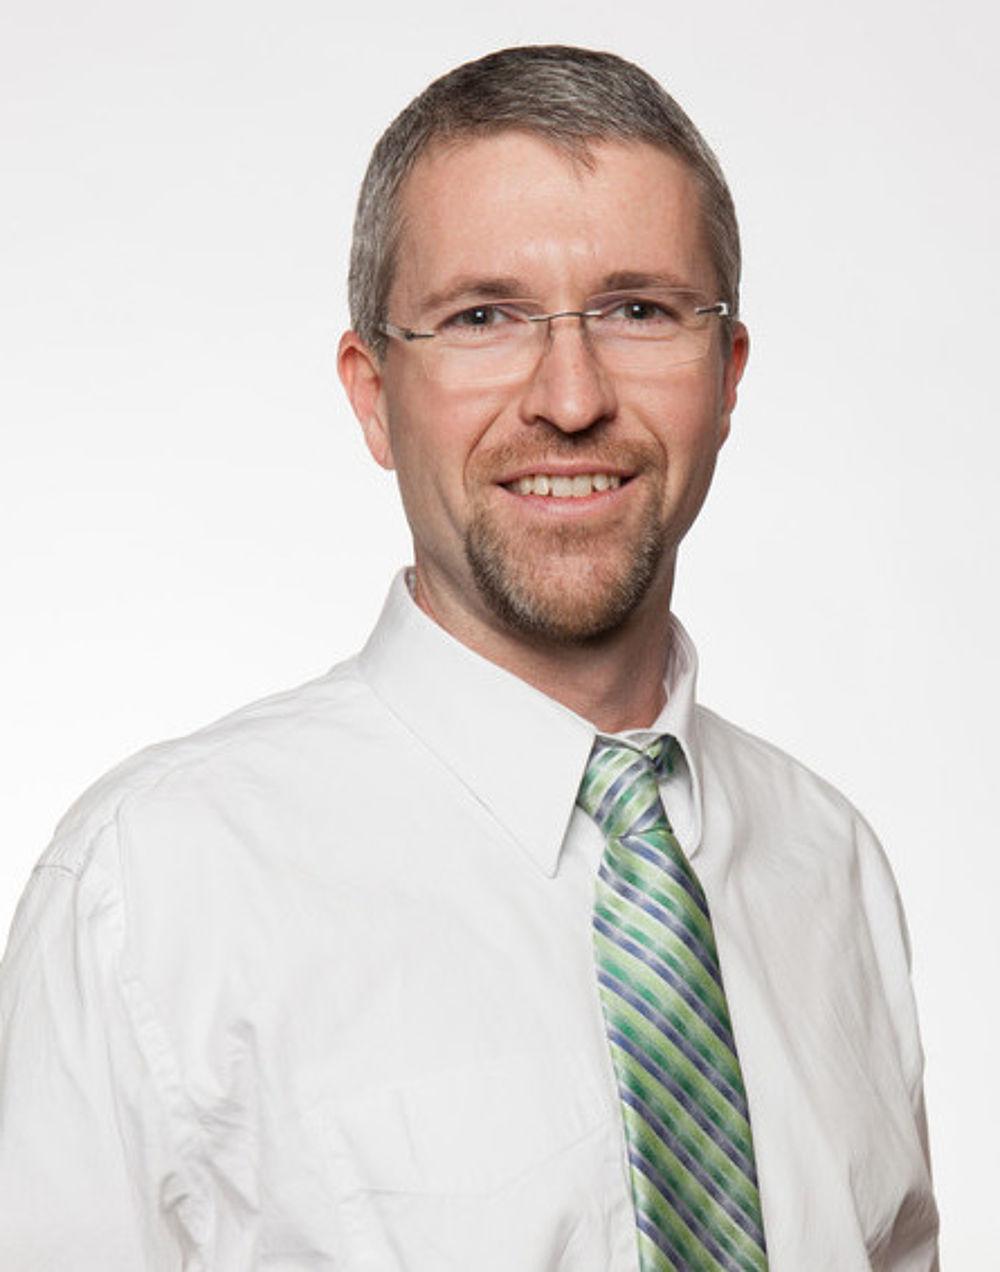 大卫·林德斯特伦穿着白衬衫和绿/蓝条纹领带的专业肖像. 